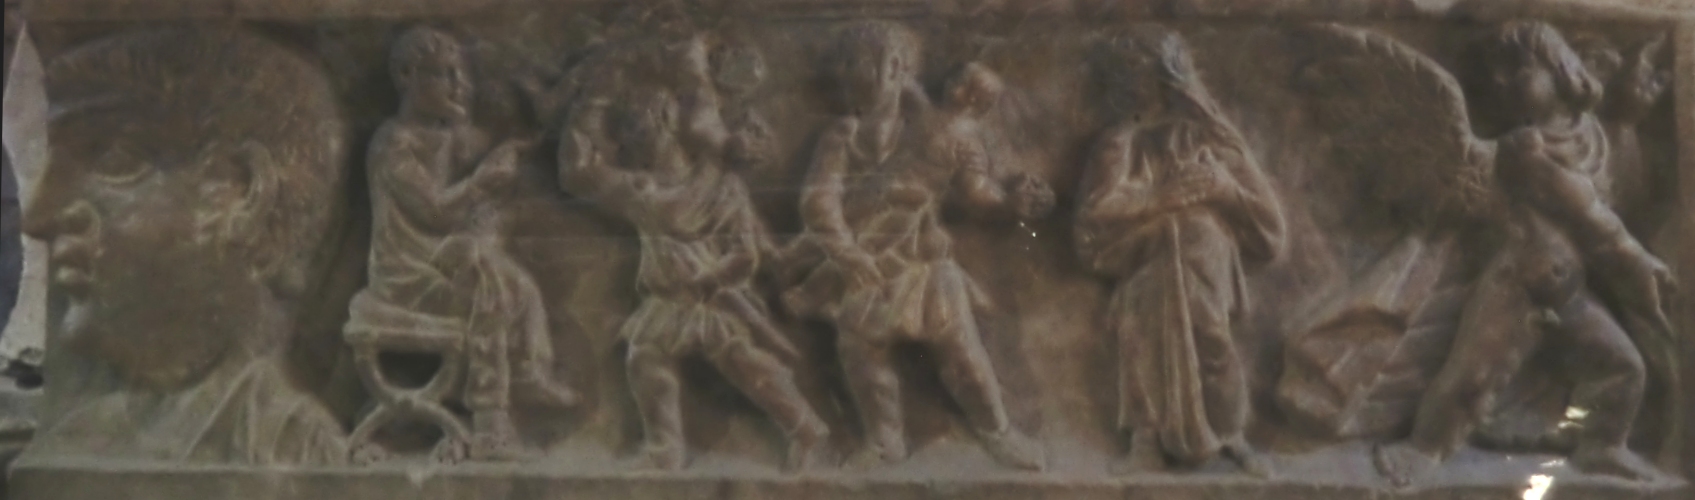 Auferweckung der Tabita durch Petrus, Relief am Sarg des Cedonius, 4. Jahrhundert, in der Krypta der Basilika Ste-Madeleine in St-Maximin-la-Sainte-Baume